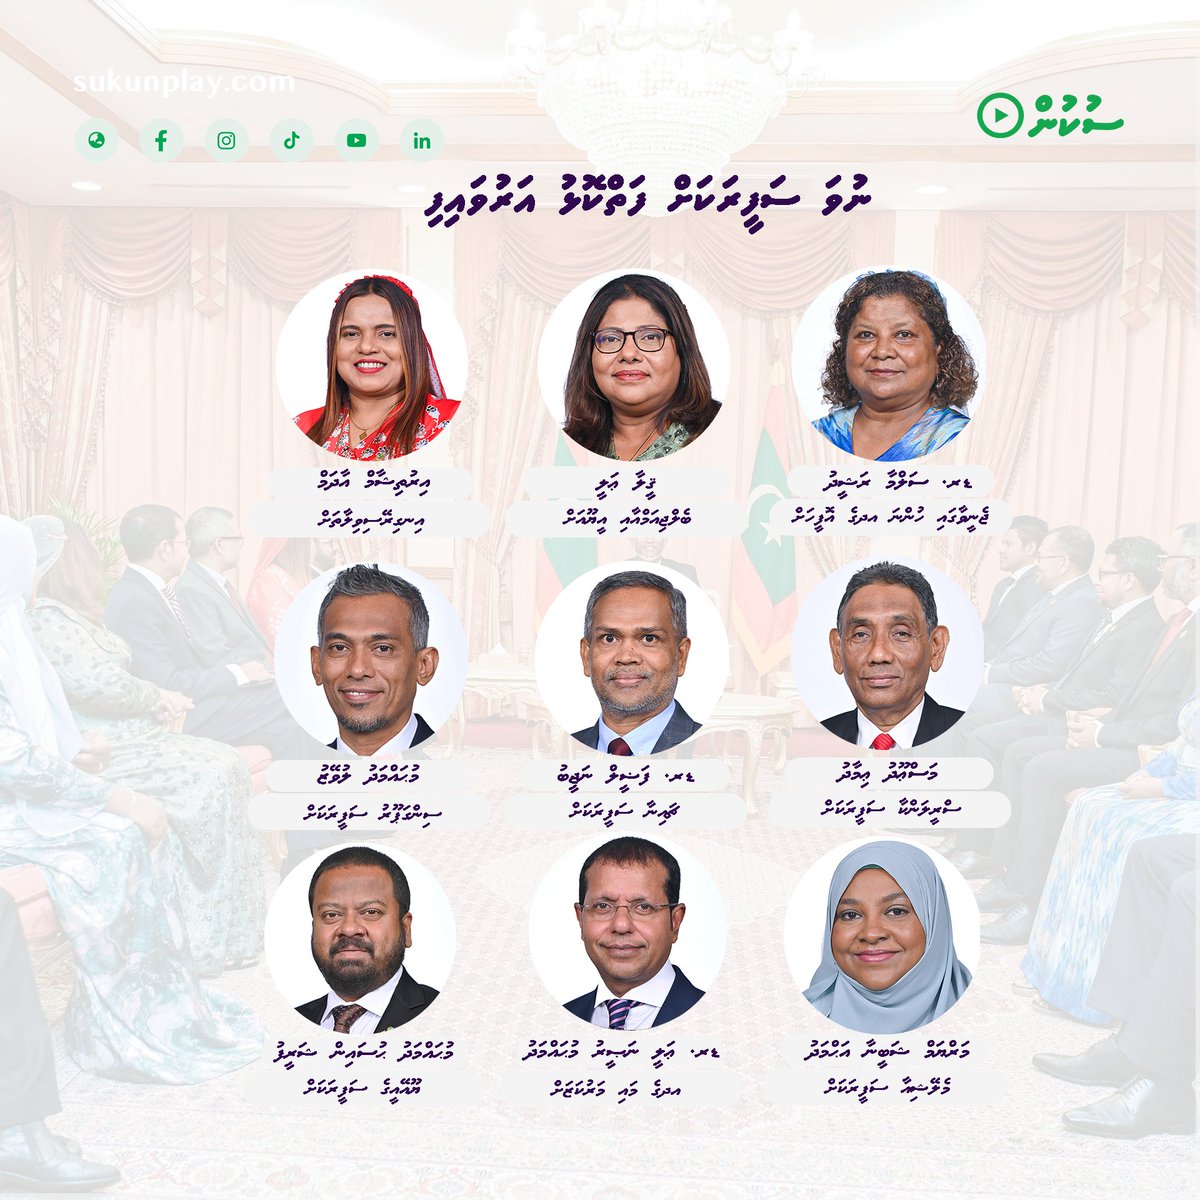 ބައިނަލްއަޤްވާމީ ޖަމްޢިއްޔާތައް ހިމެނޭގޮތަށް 9 ސަފީރުން ޢައްޔަނުކުރައްވައިފި 🔗sukunplay.com/article/13469 #maldives @presidencymv @MoFAmv